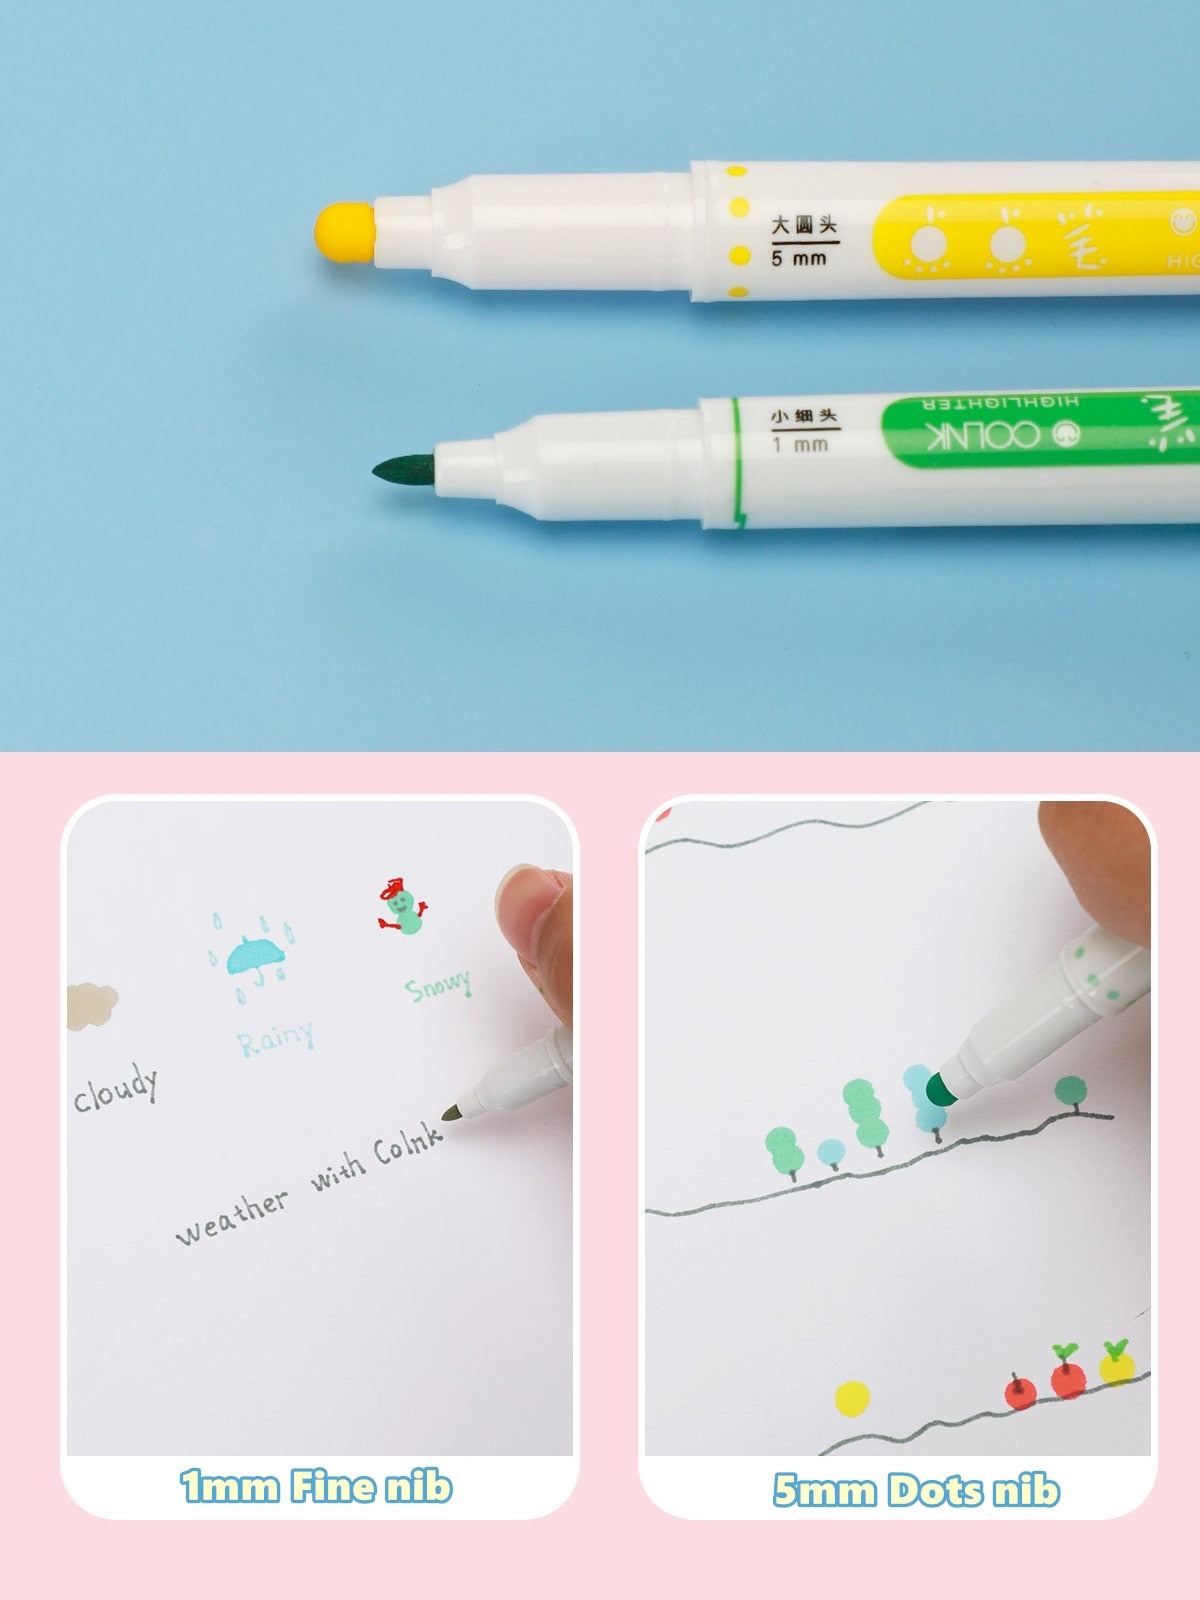 6pcs Light Color Dot Highlighter Pen Set Dual Side Fine Liner & Spot Marker for Drawing